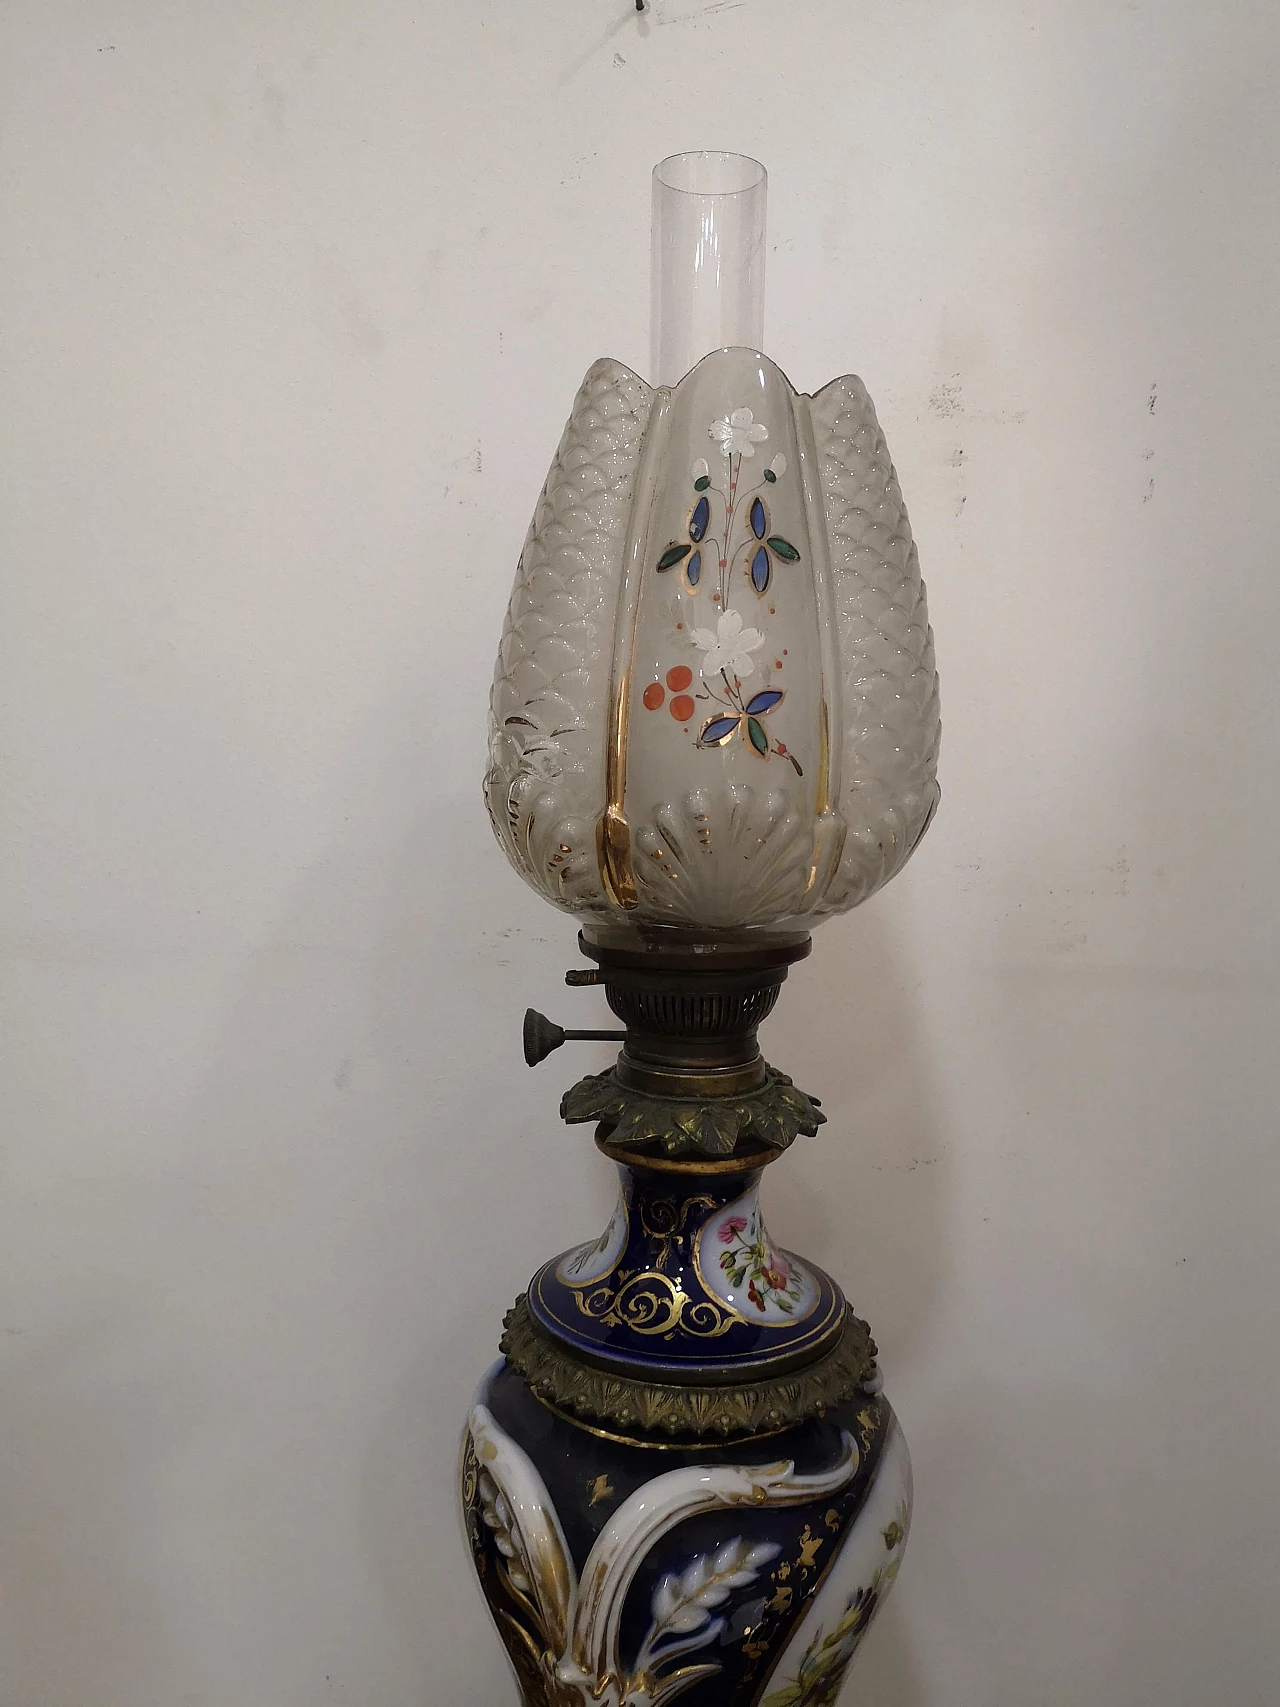 Sèvres porcelain oil lamp, mid-19th century 17